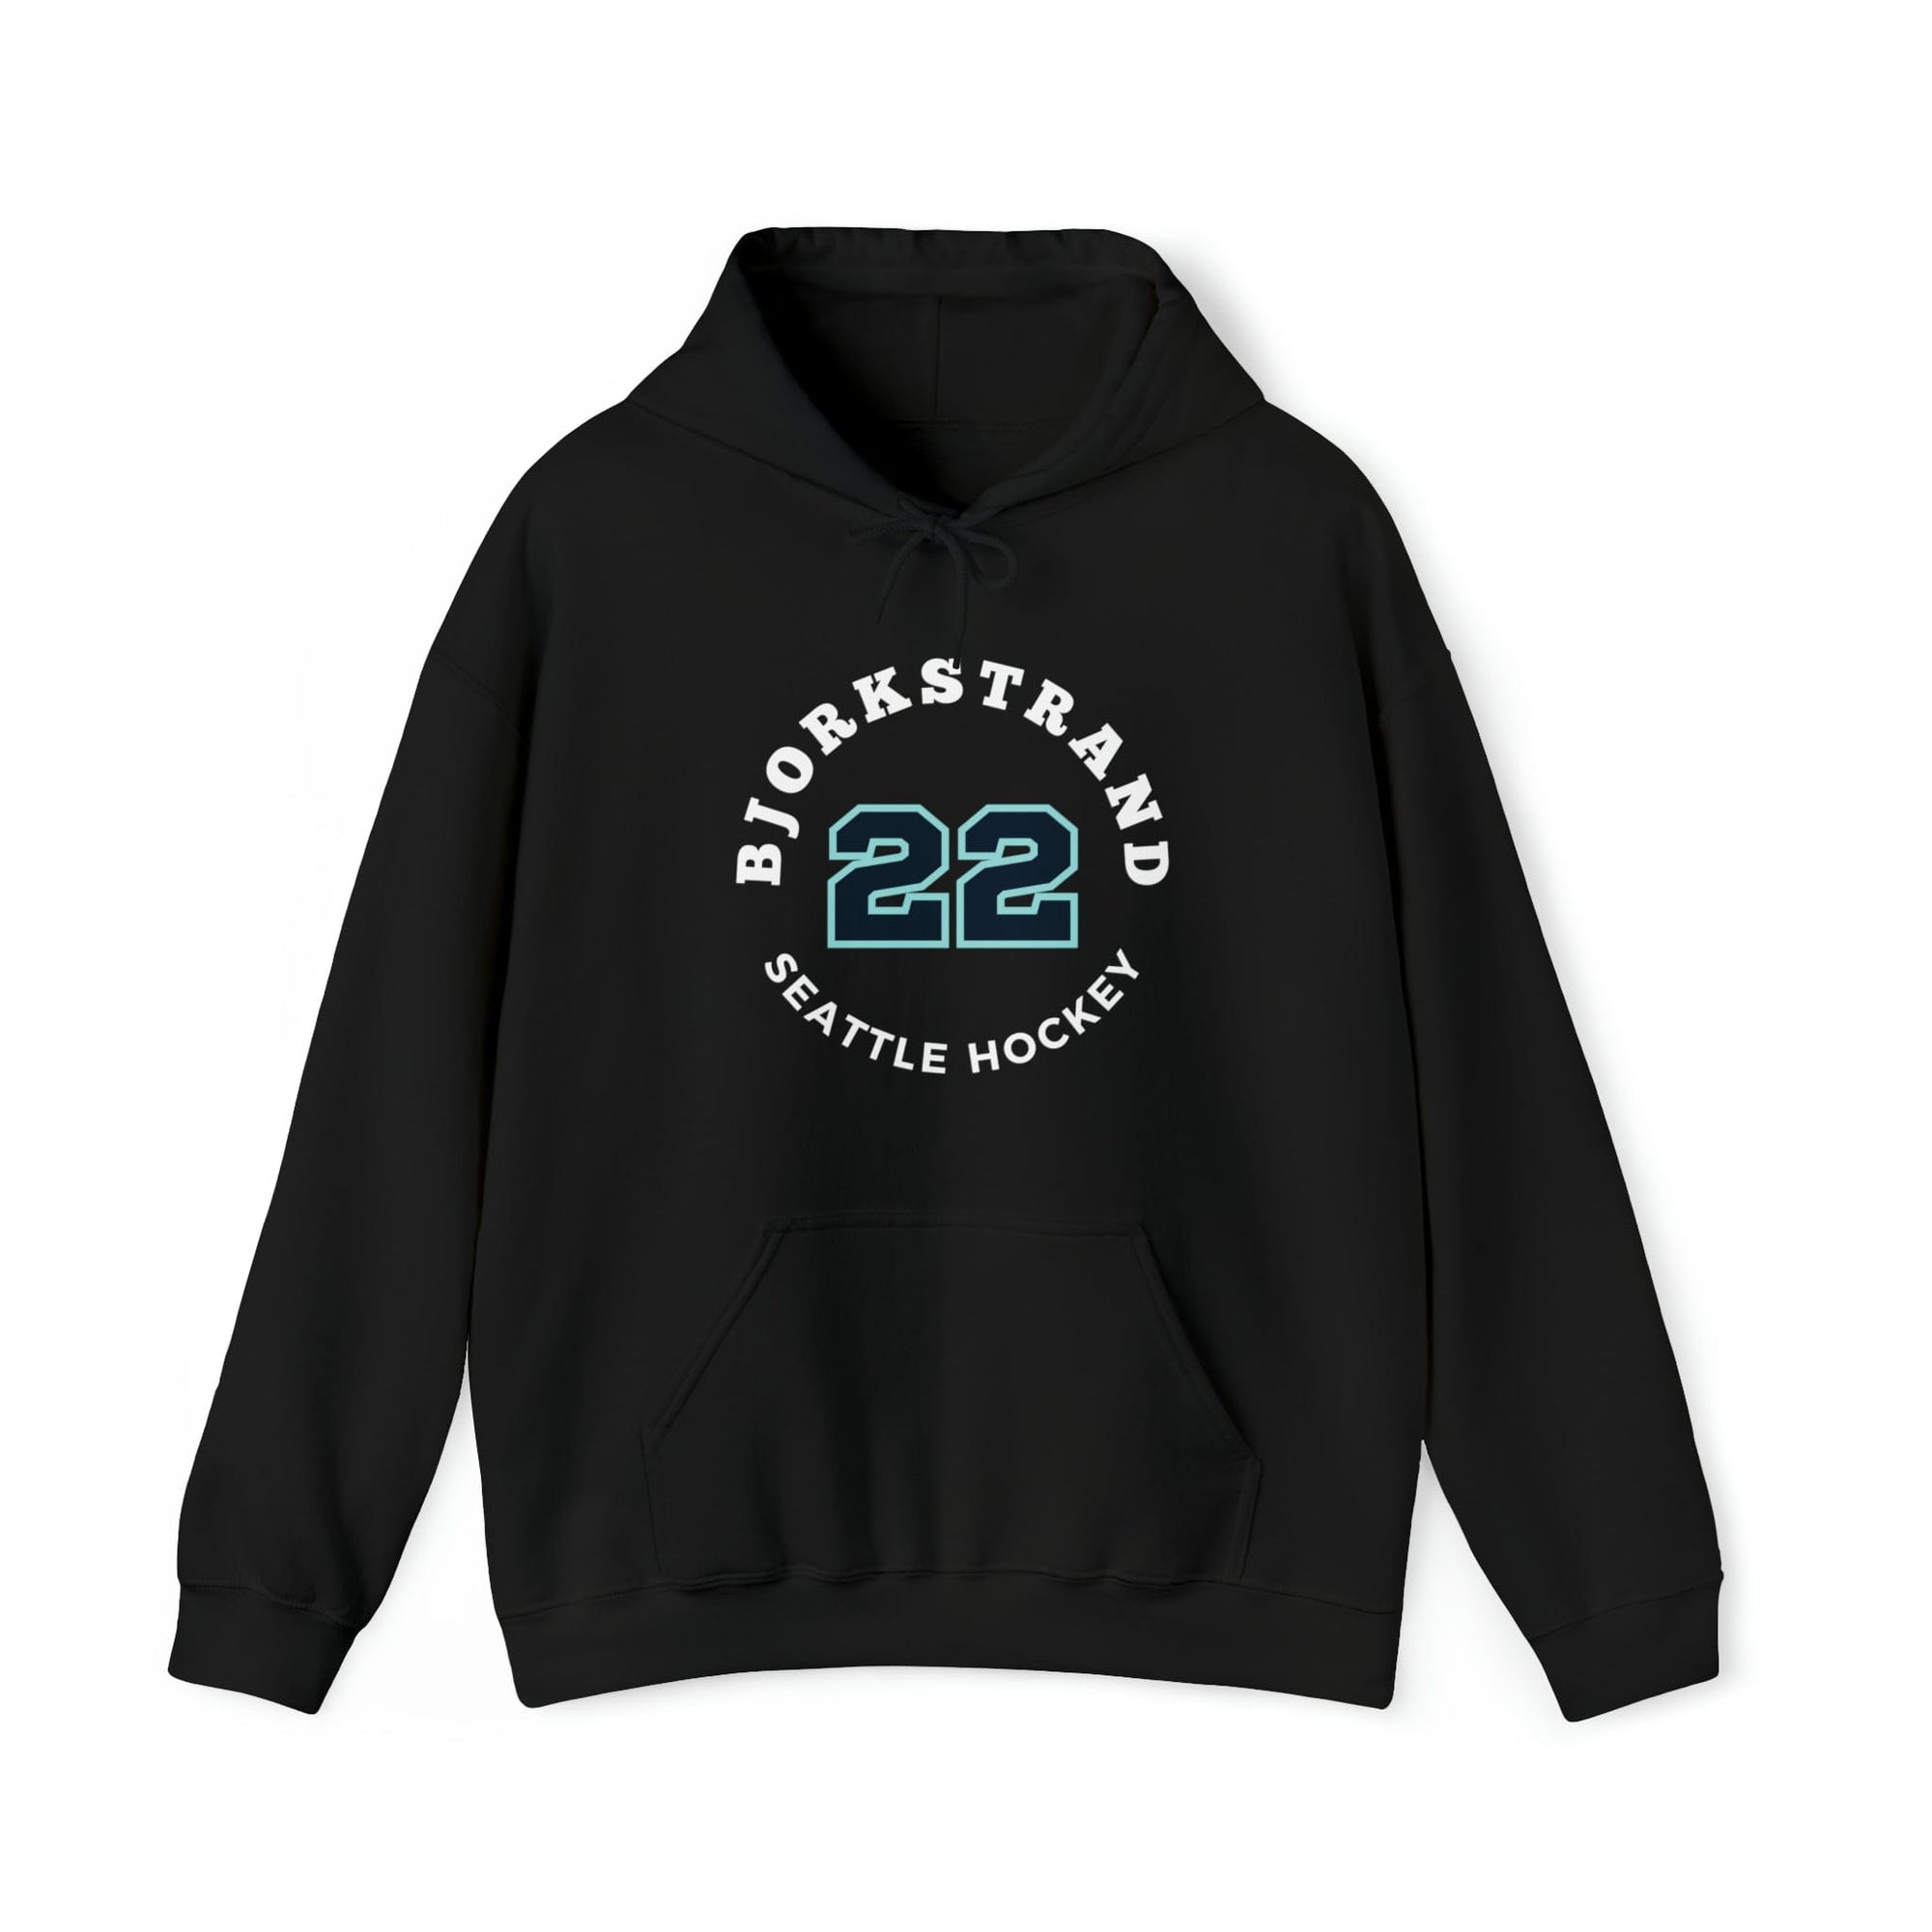 Hoodie Bjorkstrand 22 Seattle Hockey Number Arch Design Unisex Hooded Sweatshirt